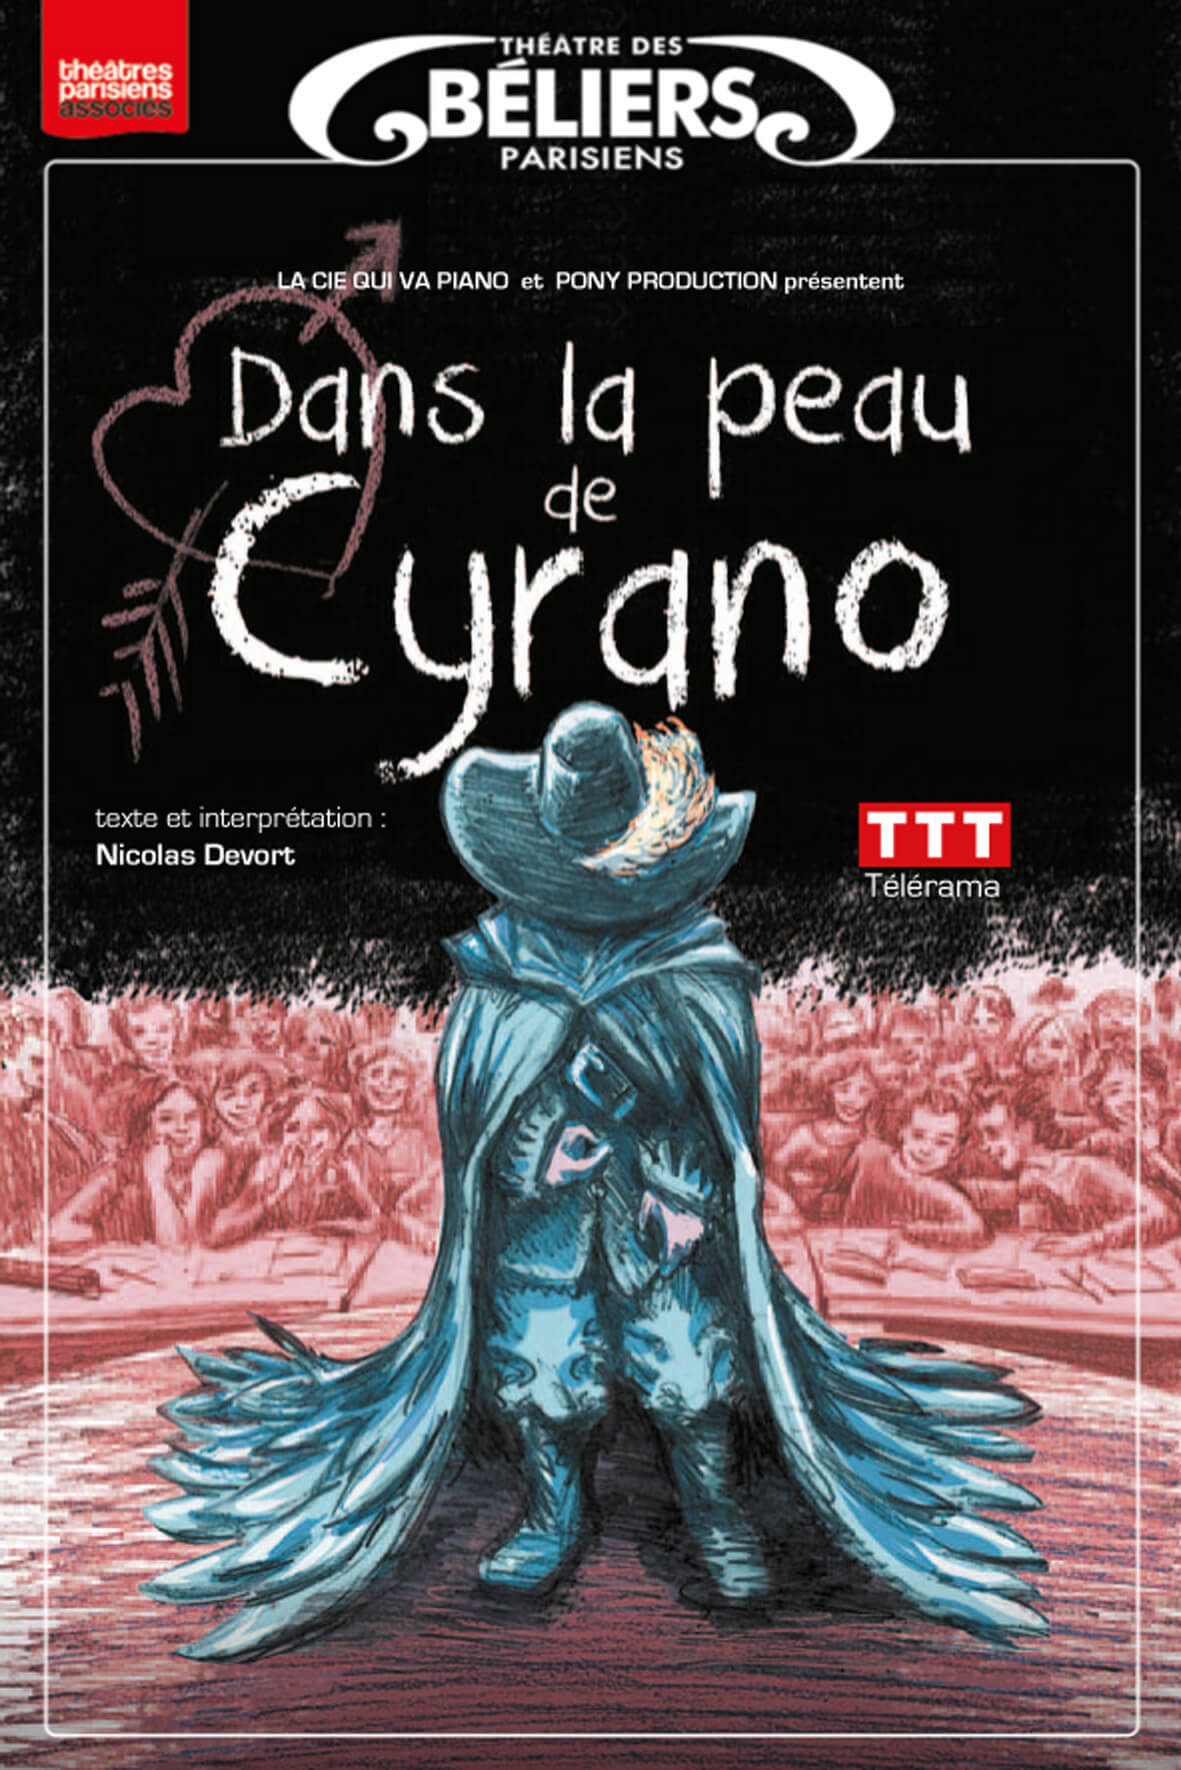 Dans la peau de Cyrano - Théâtre des Béliers Parisiens